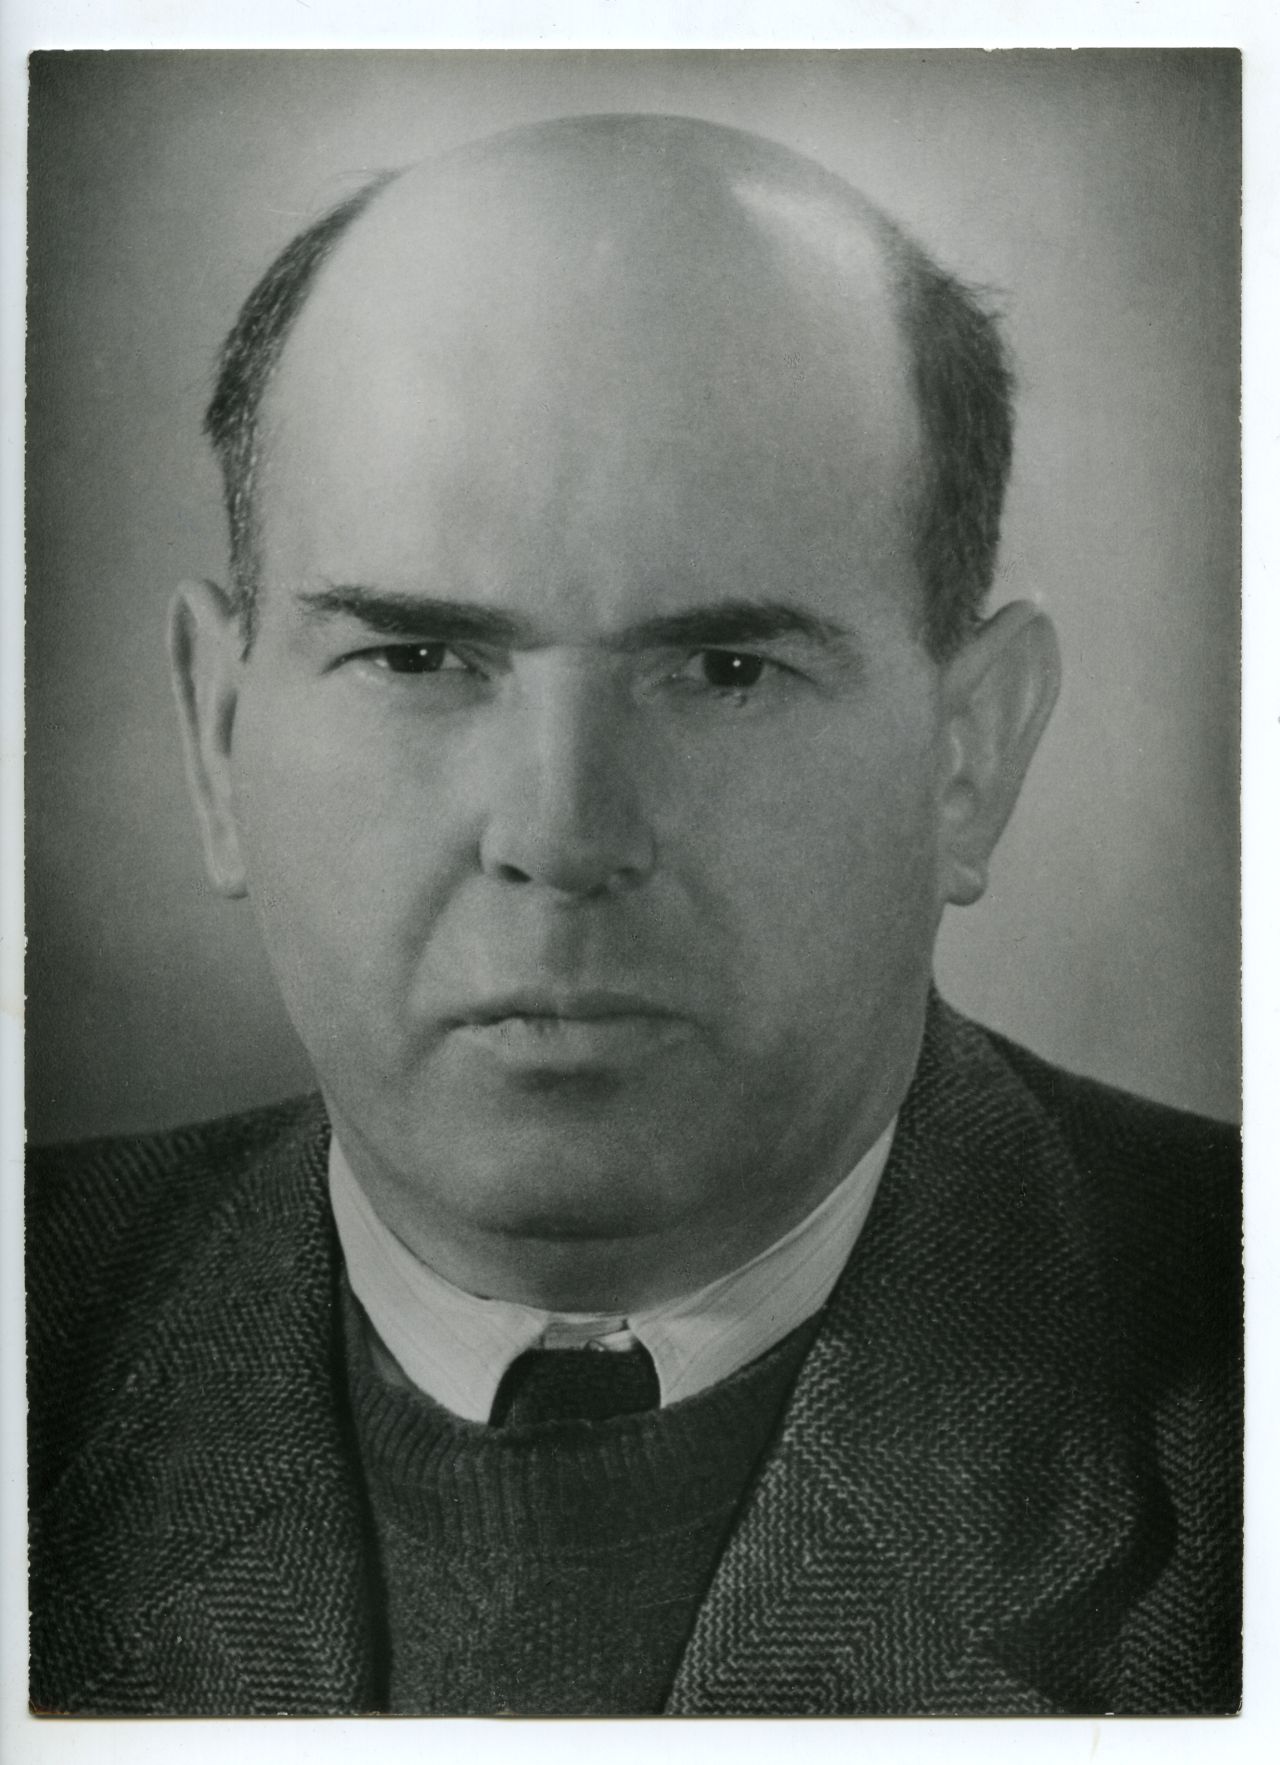 Porträtfotografie von Ernst Wollweber, Staatssekretär/Minister für Staatssicherheit der DDR (1953-1957)